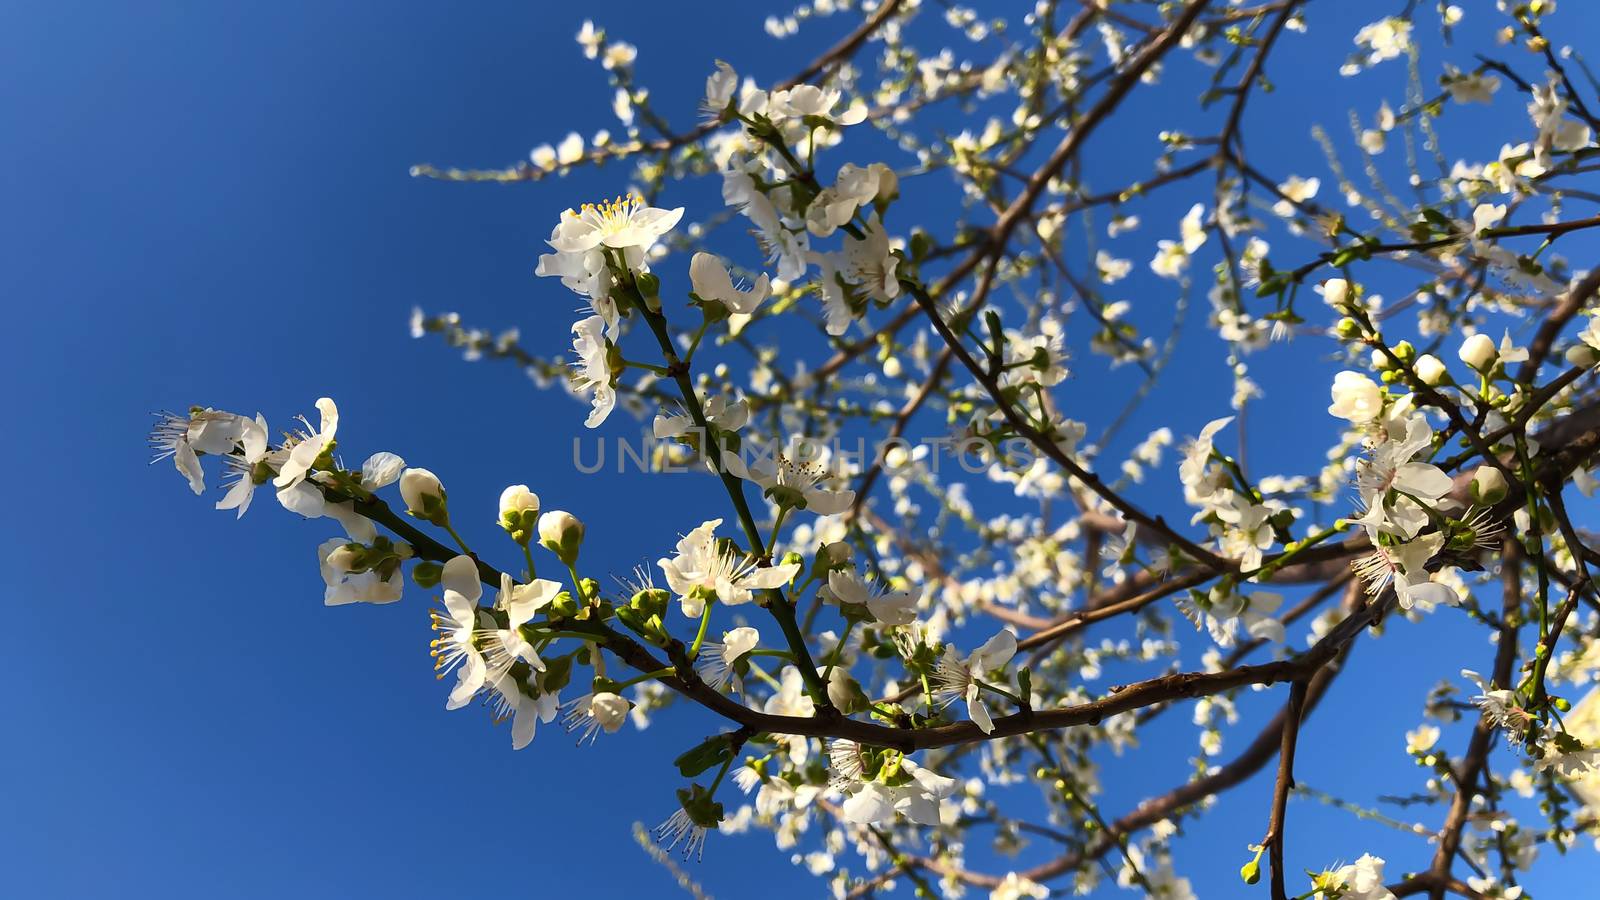 Sakura cherry blossom flower on blue sky background by AlonaGryadovaya